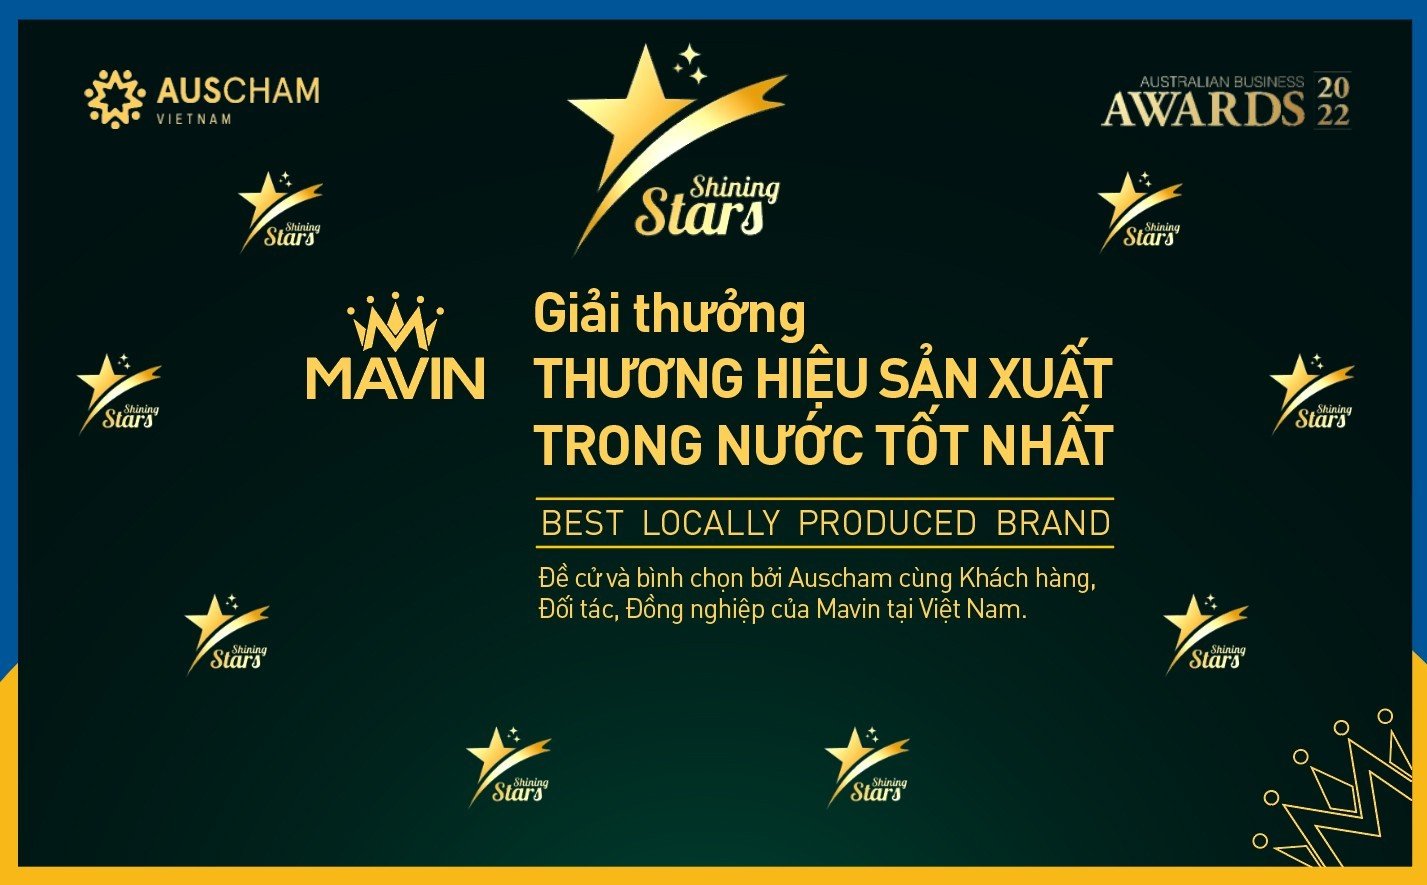 Mavin tiếp tục là Thương hiệu sản xuất trong nước tốt nhất của Auscham Việt Nam - Ảnh 2.